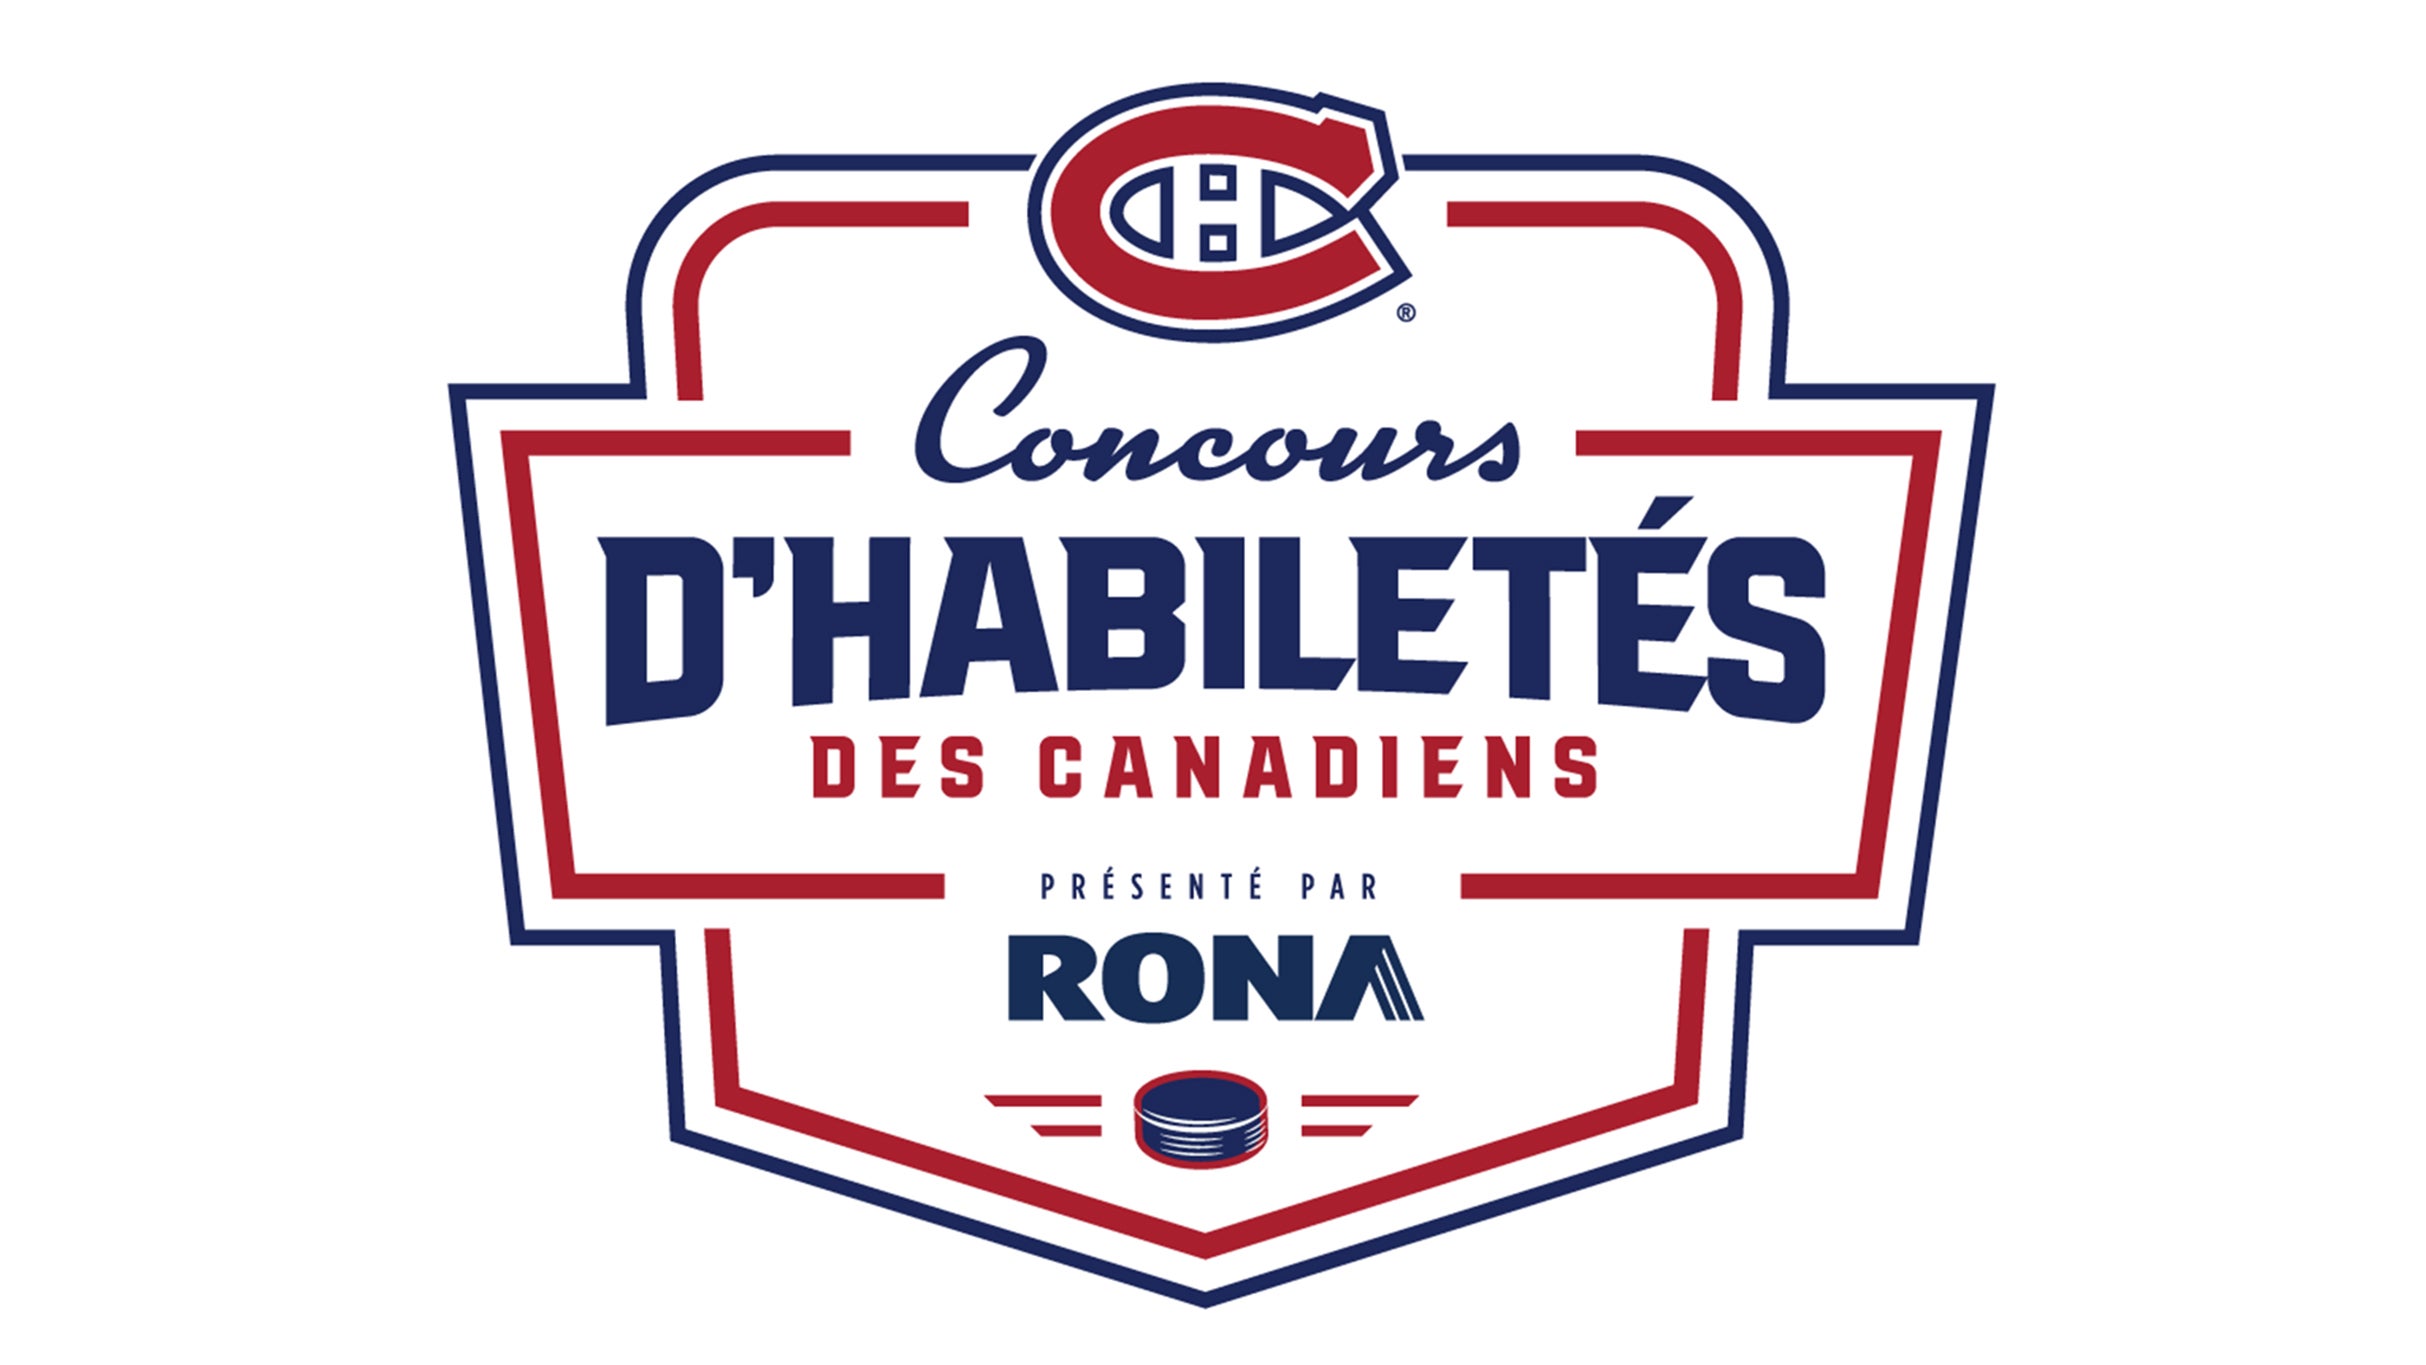 CONCOURS D'HABILETES DES CANADIENS presente par RONA in Montreal promo photo for Prévente abonné Subscriber presale offer code